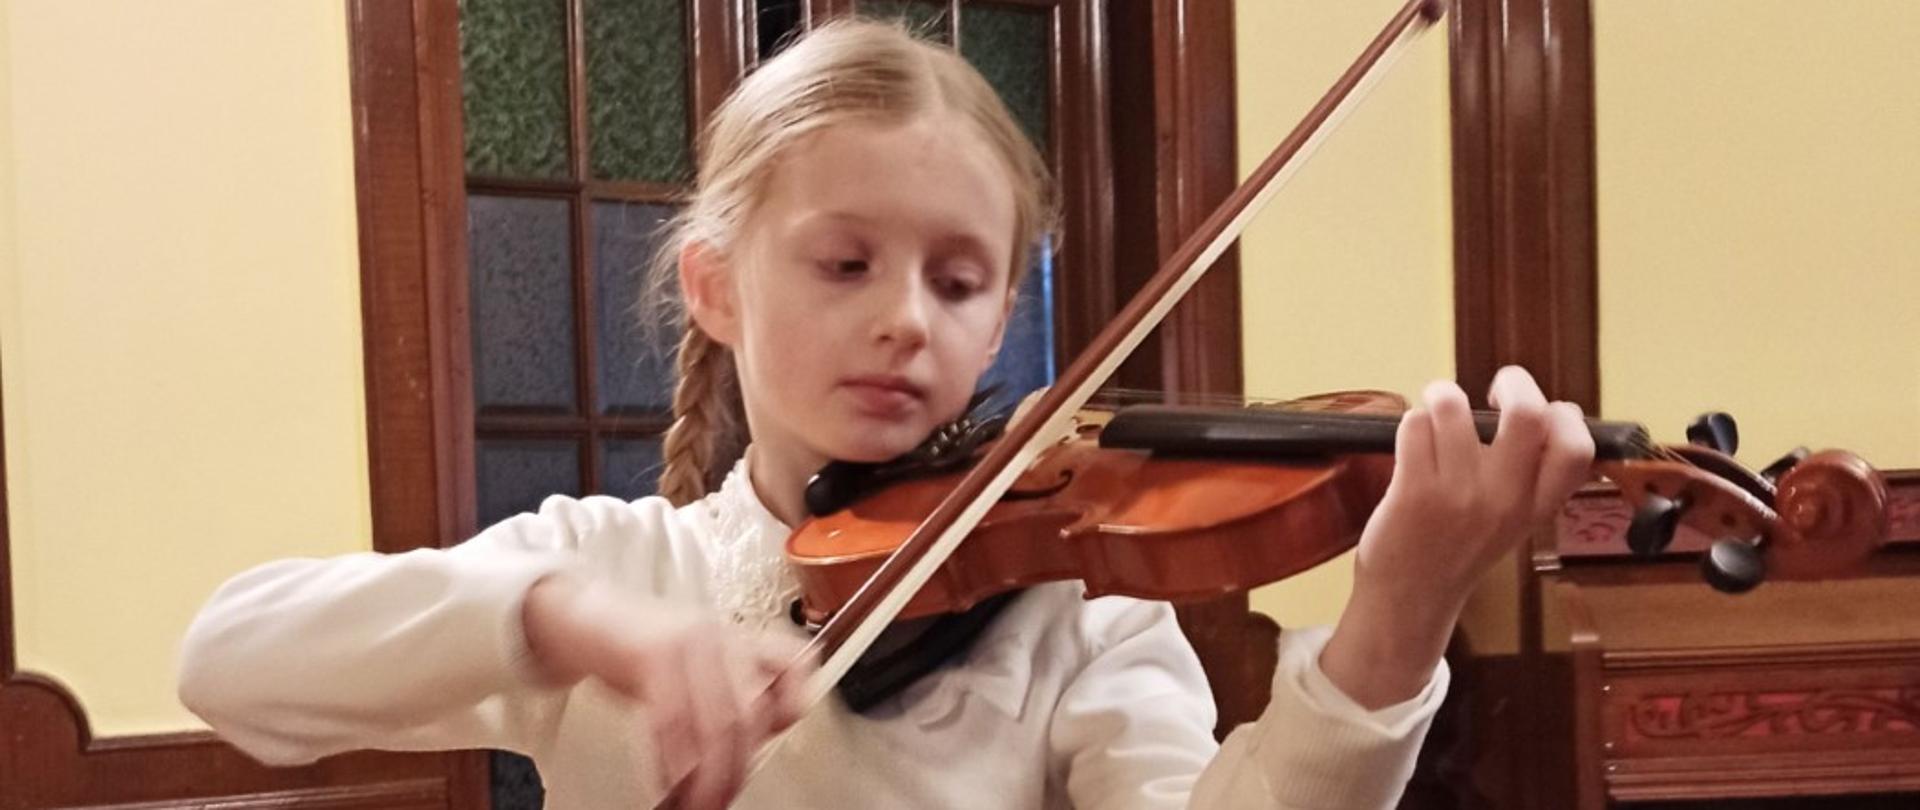 Zdjęcie kolorowe. Dziewczynka w białej bluzce gra na skrzypcach.